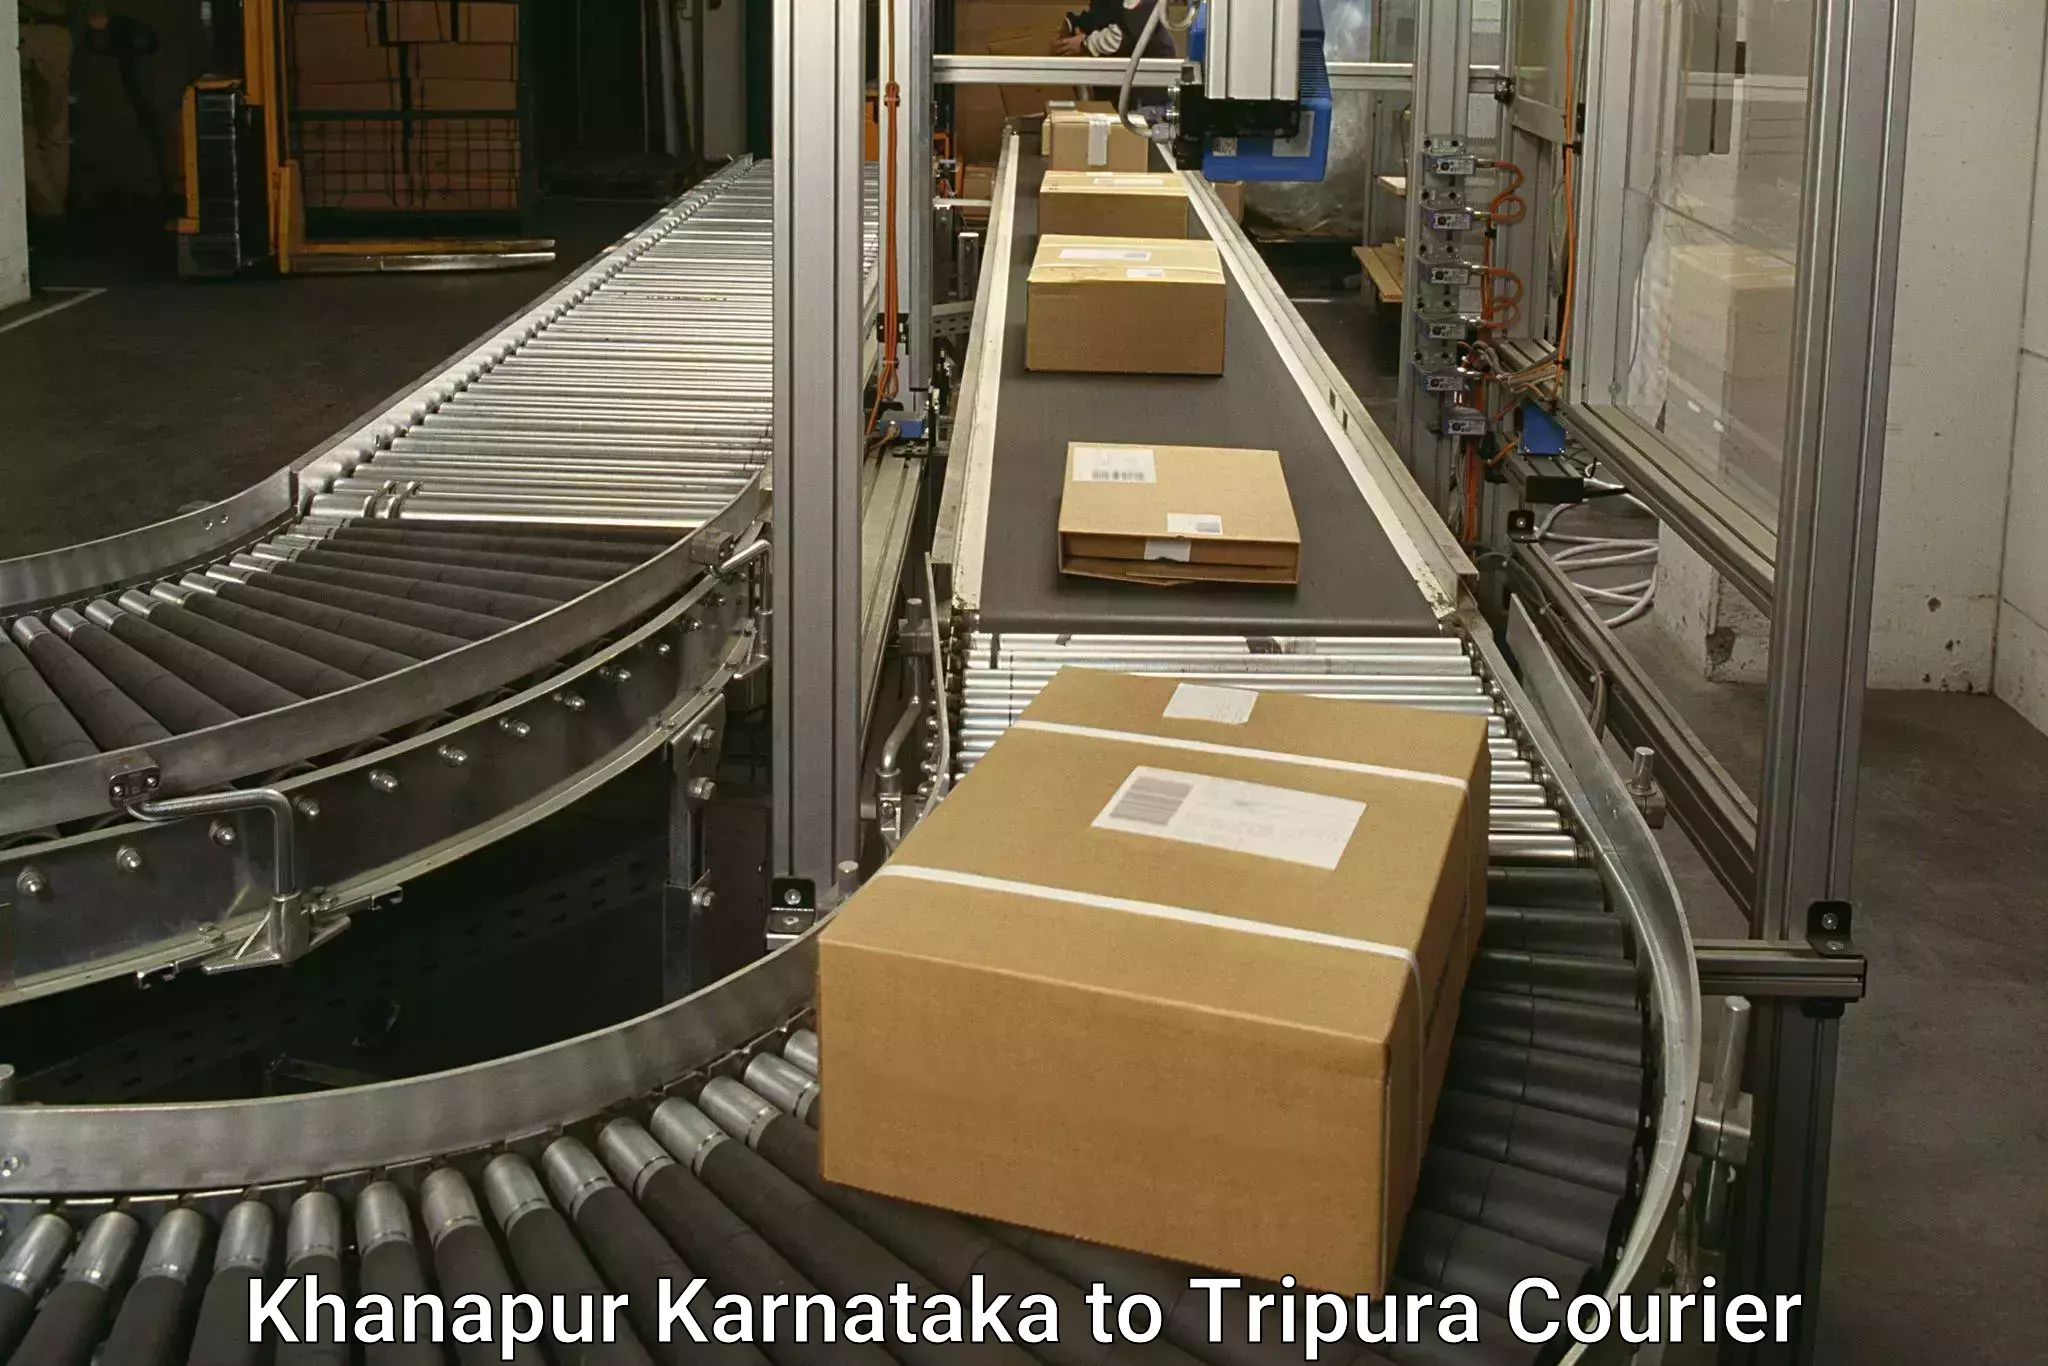 High-speed delivery Khanapur Karnataka to IIIT Agartala